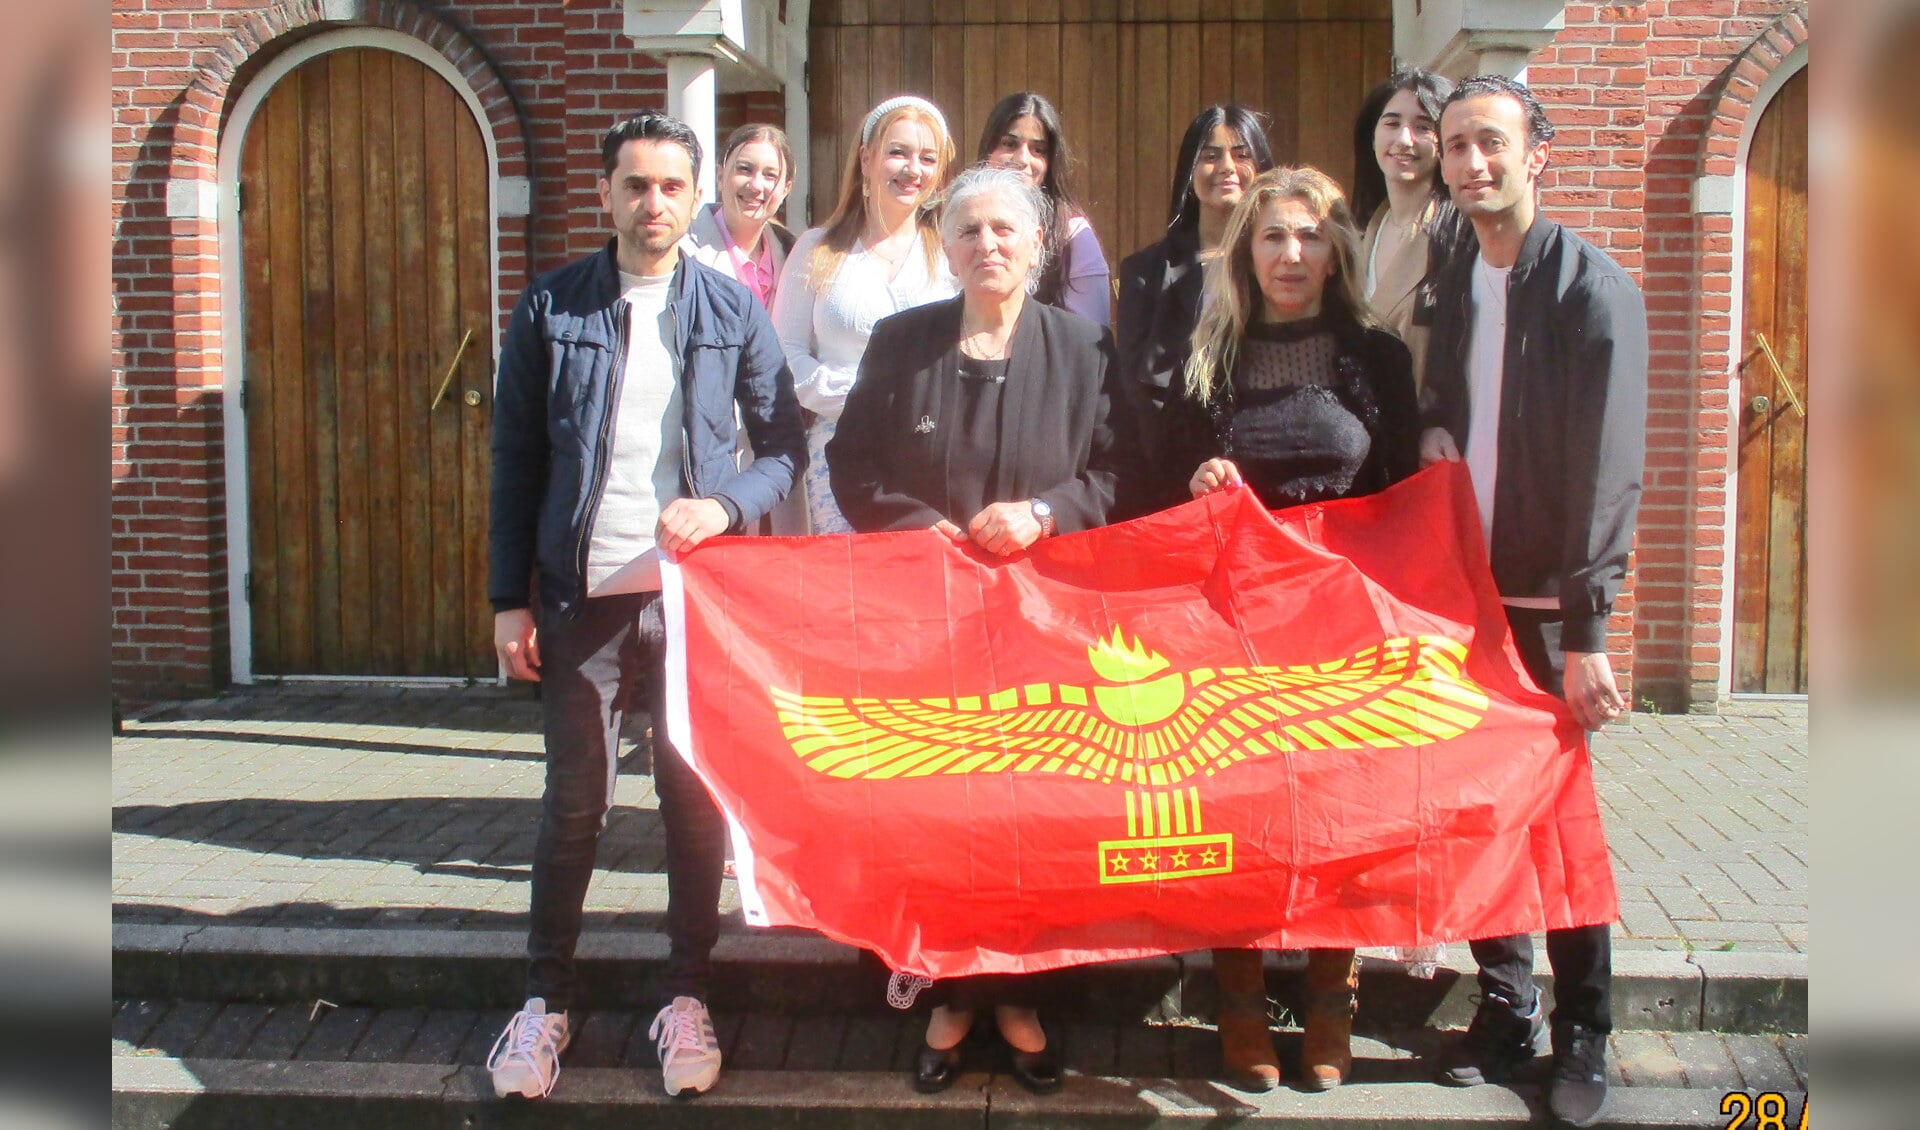 Het Syrisch Orthodox vrouwenkoor Oldenzaal zal ook optreden. Ze houden de Aramese vlag vast. (Tekst/foto: Martin Meijerink)